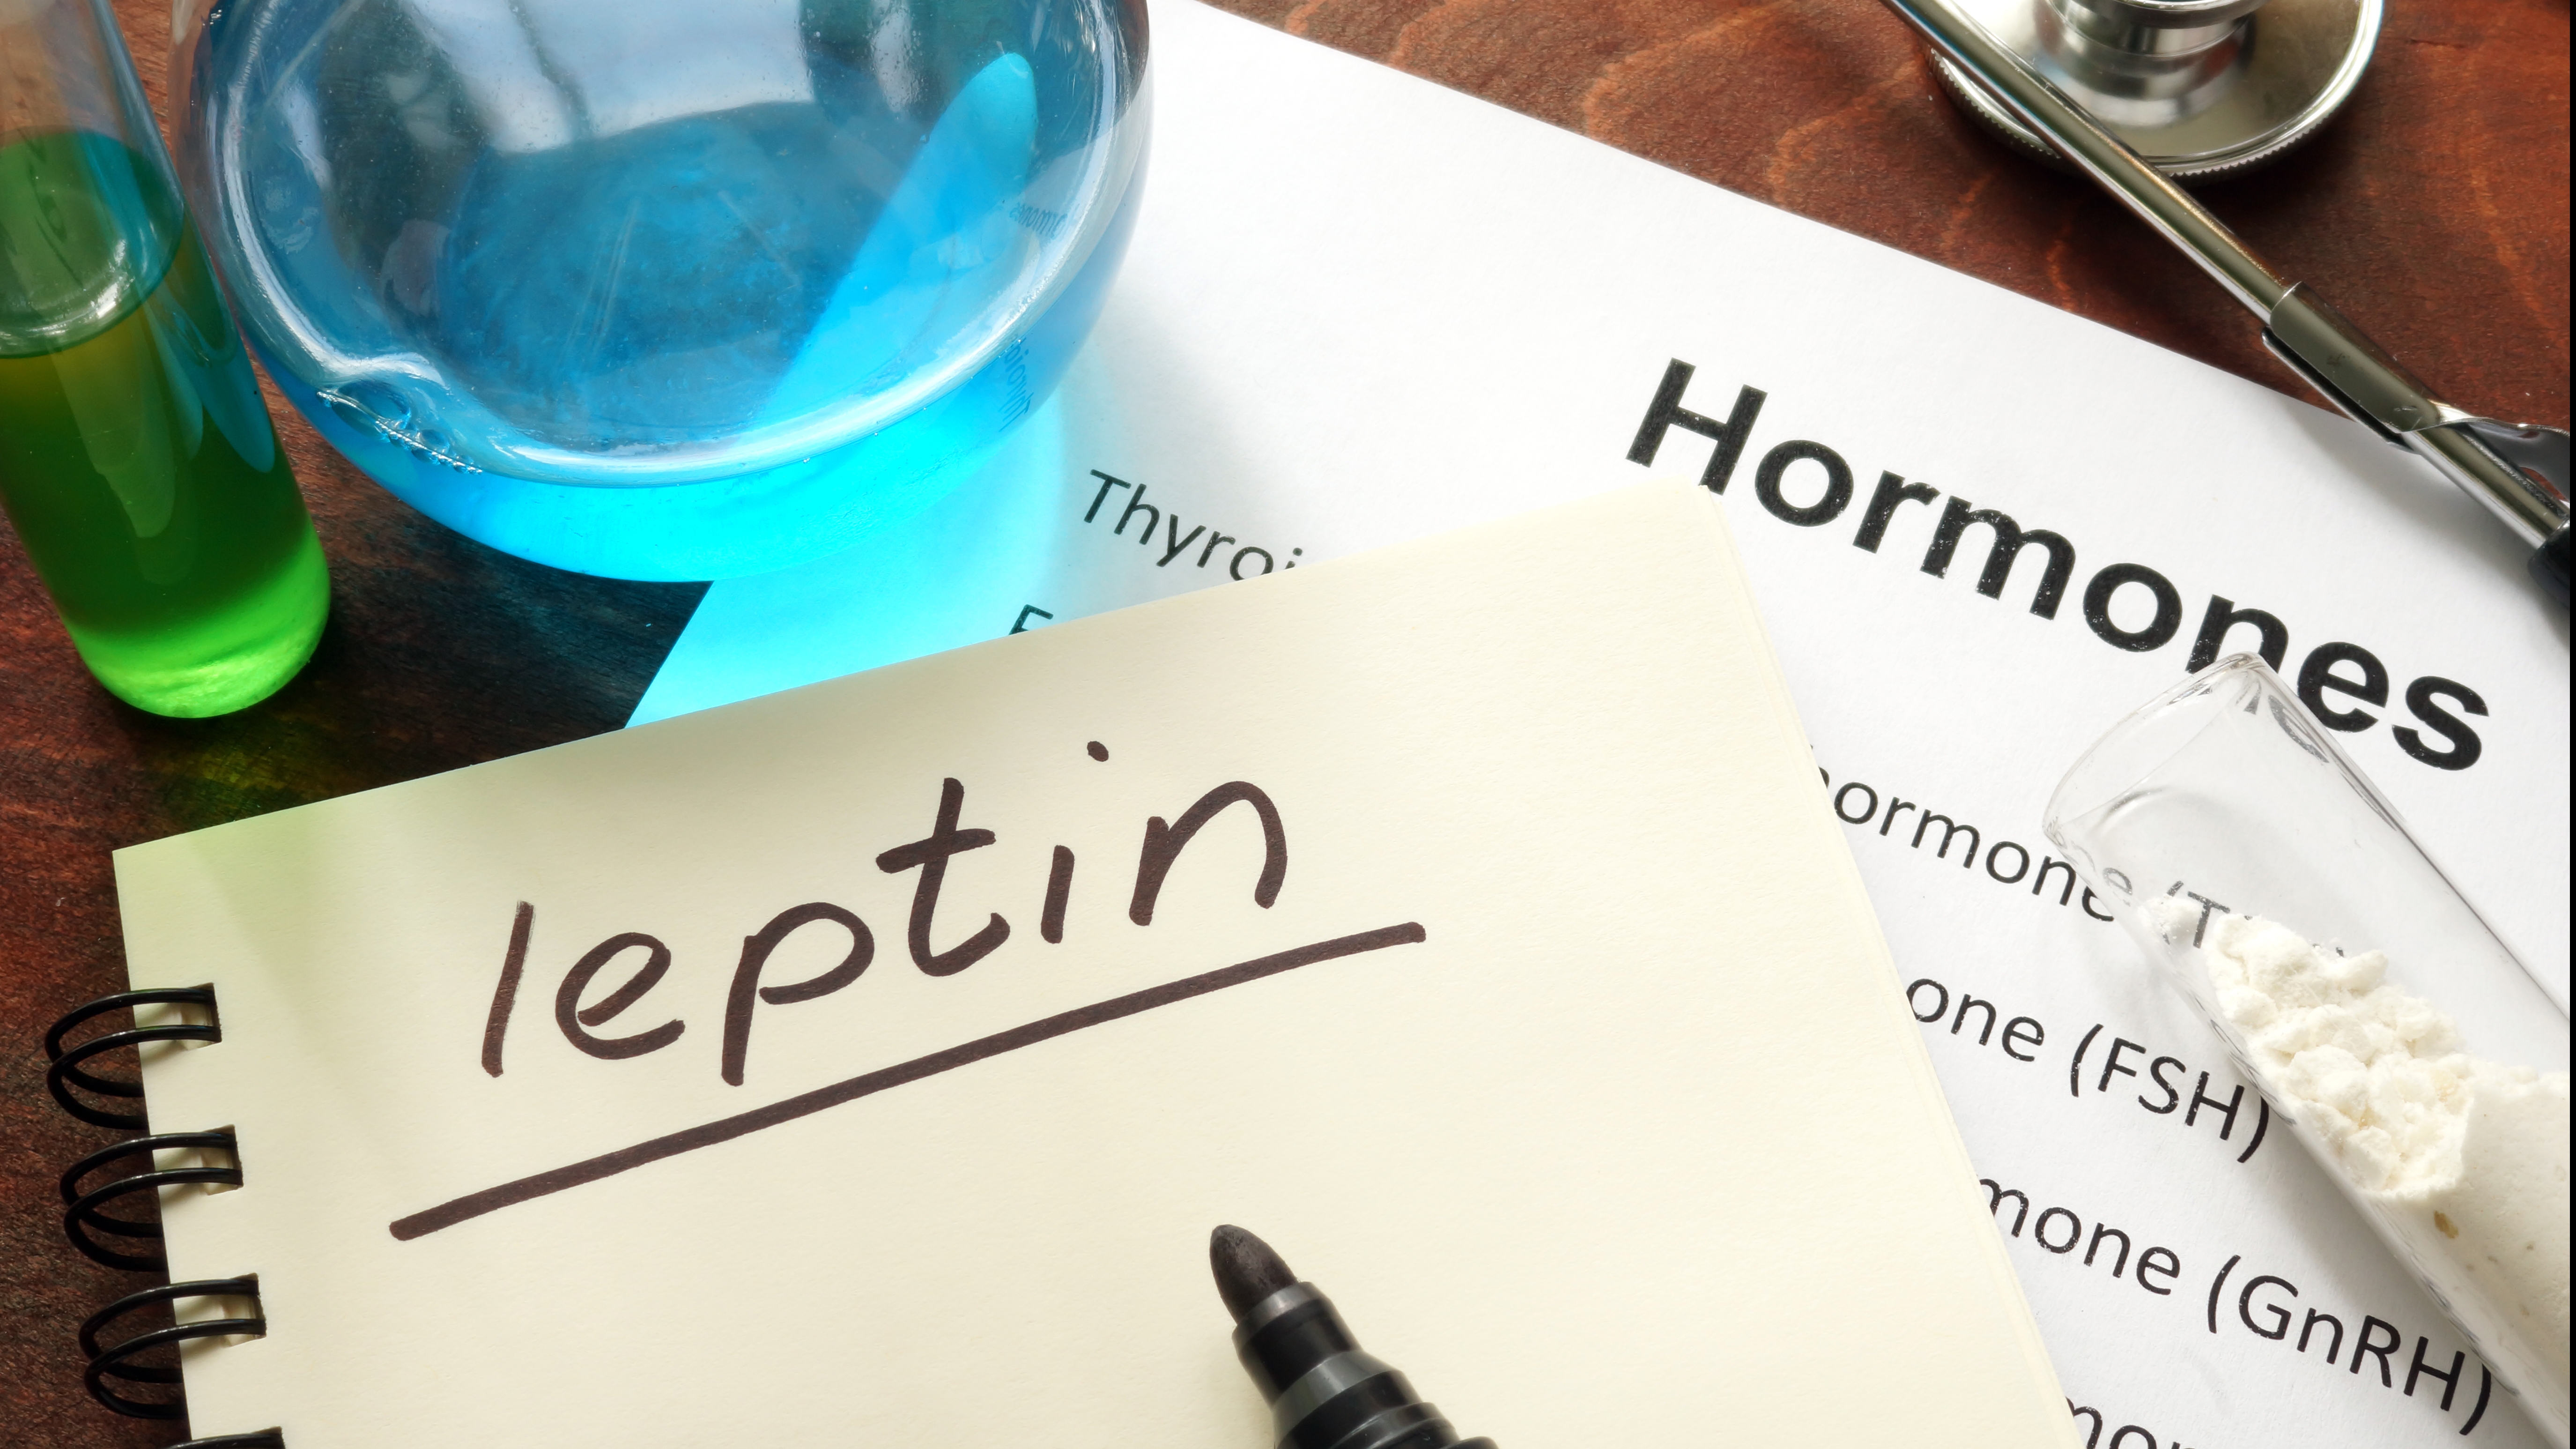 Leptina hormonul care influenţează apetitul metabolismul şi distribuţia ţesutului adipos